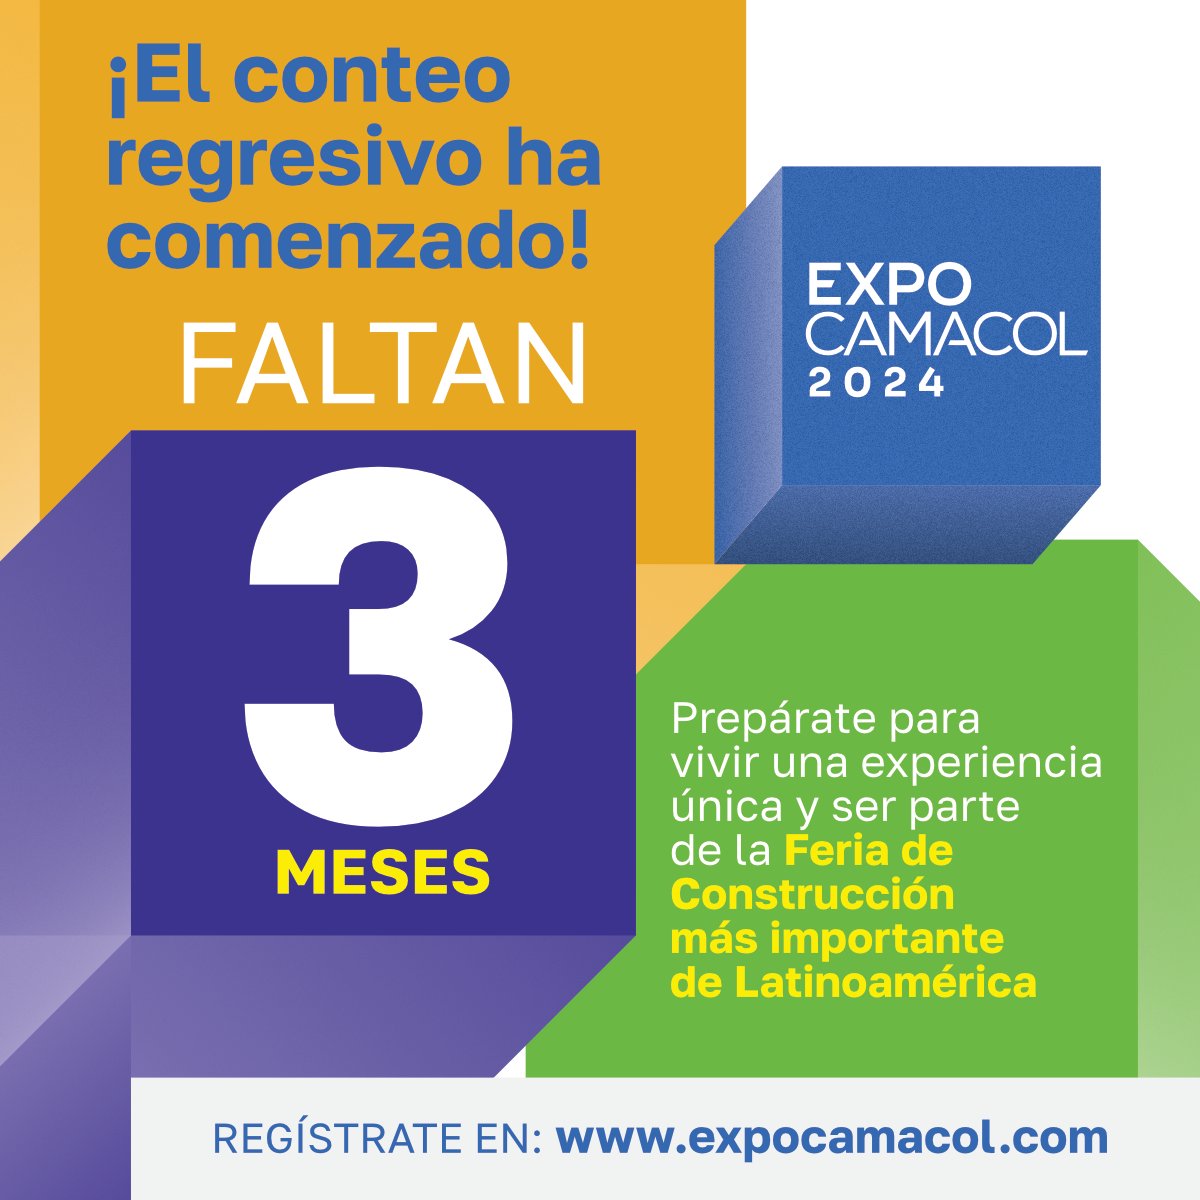 ¡Faltan 3️⃣ meses para #Expocamacol2024! La Feria de construcción más importante de #Latinoamérica 🙌🏼🏗️. ️ Te esperamos del 21 al 24 de agosto, en Plaza Mayor, Medellín. Compra ahora tu boleta en expocamacol.com y asegura tu tarifa especial 🤩.